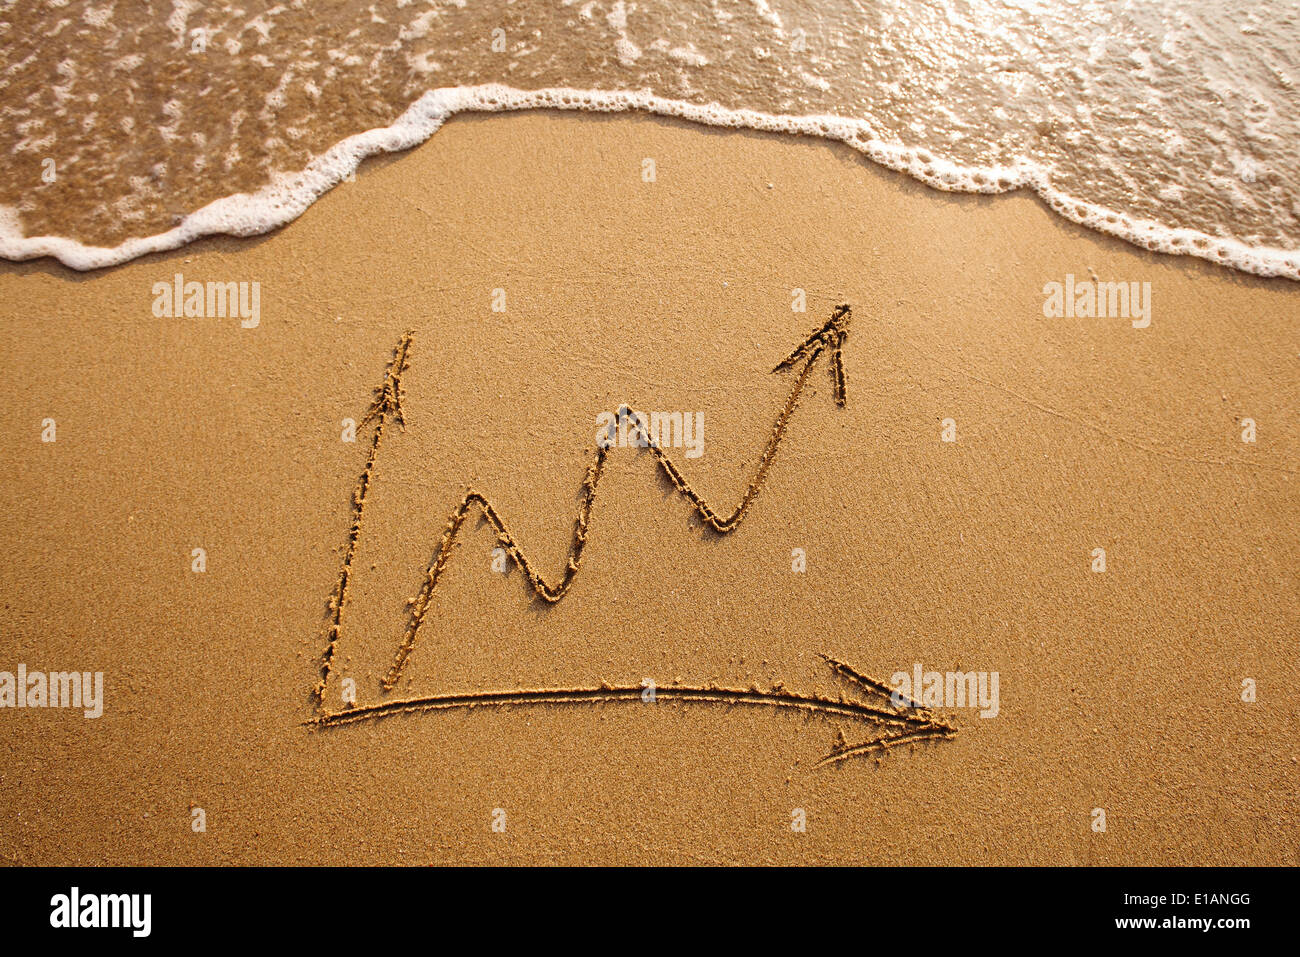 La croissance des entreprises, le graphique dessiné sur le sable Banque D'Images